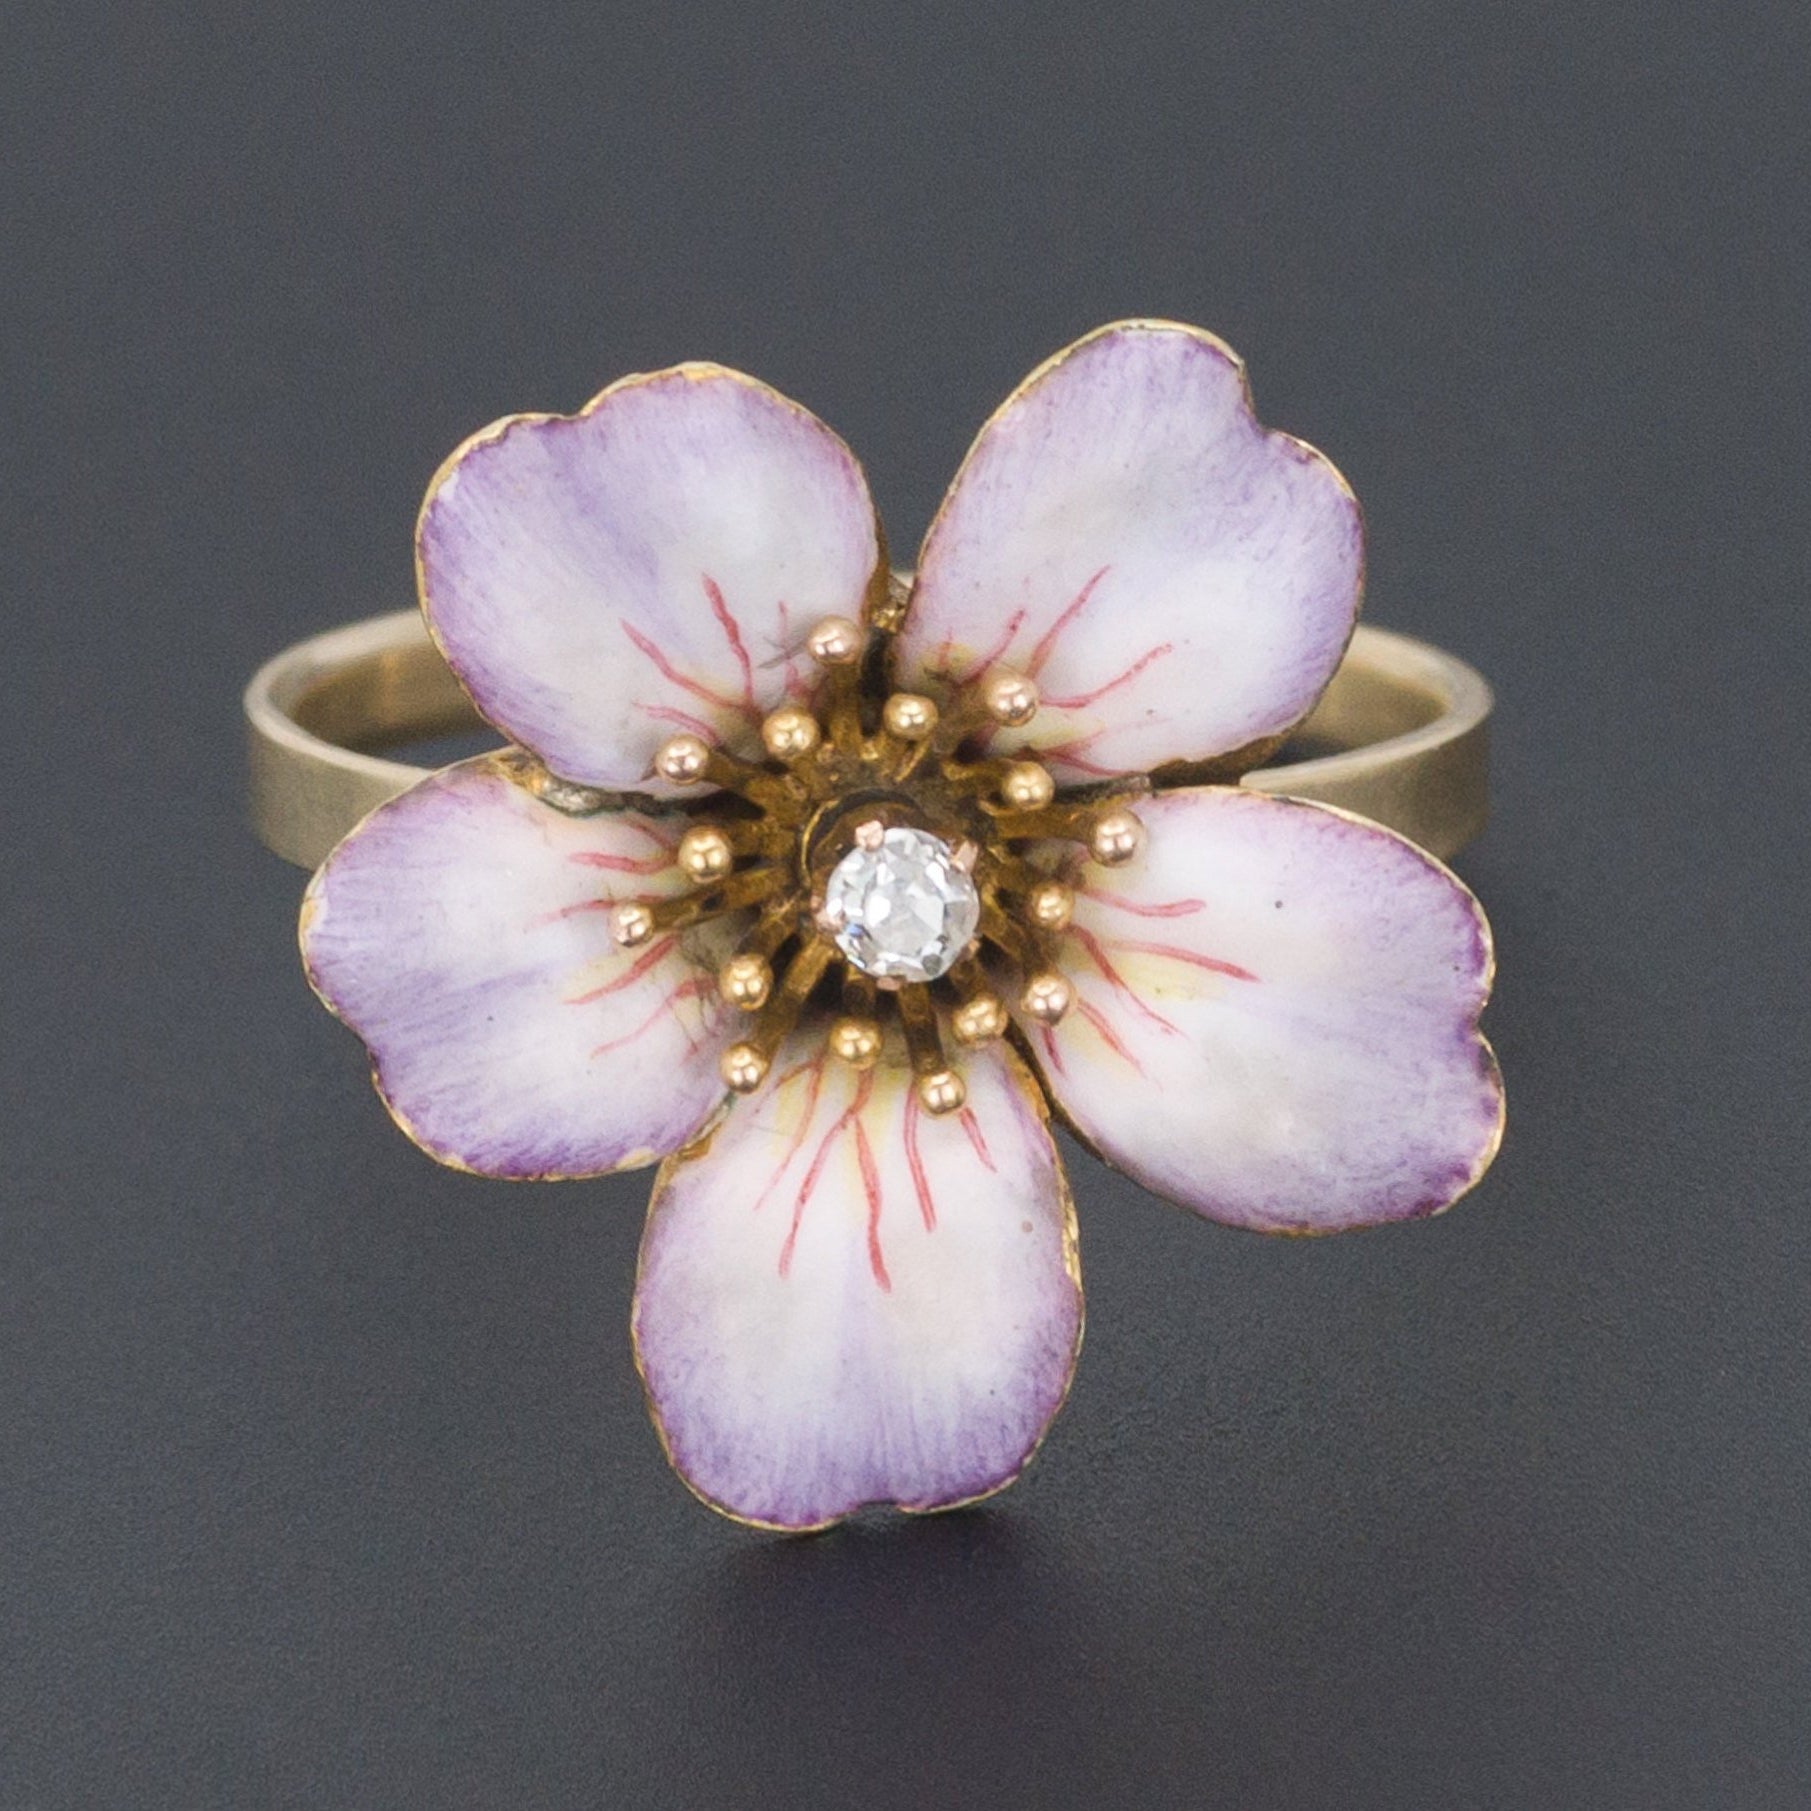 14k Gold Enamel and Diamond Flower Ring | Antique Pin Conversion Ring | 14k Gold Ring | Enamel Flower Ring | Diamond Ring